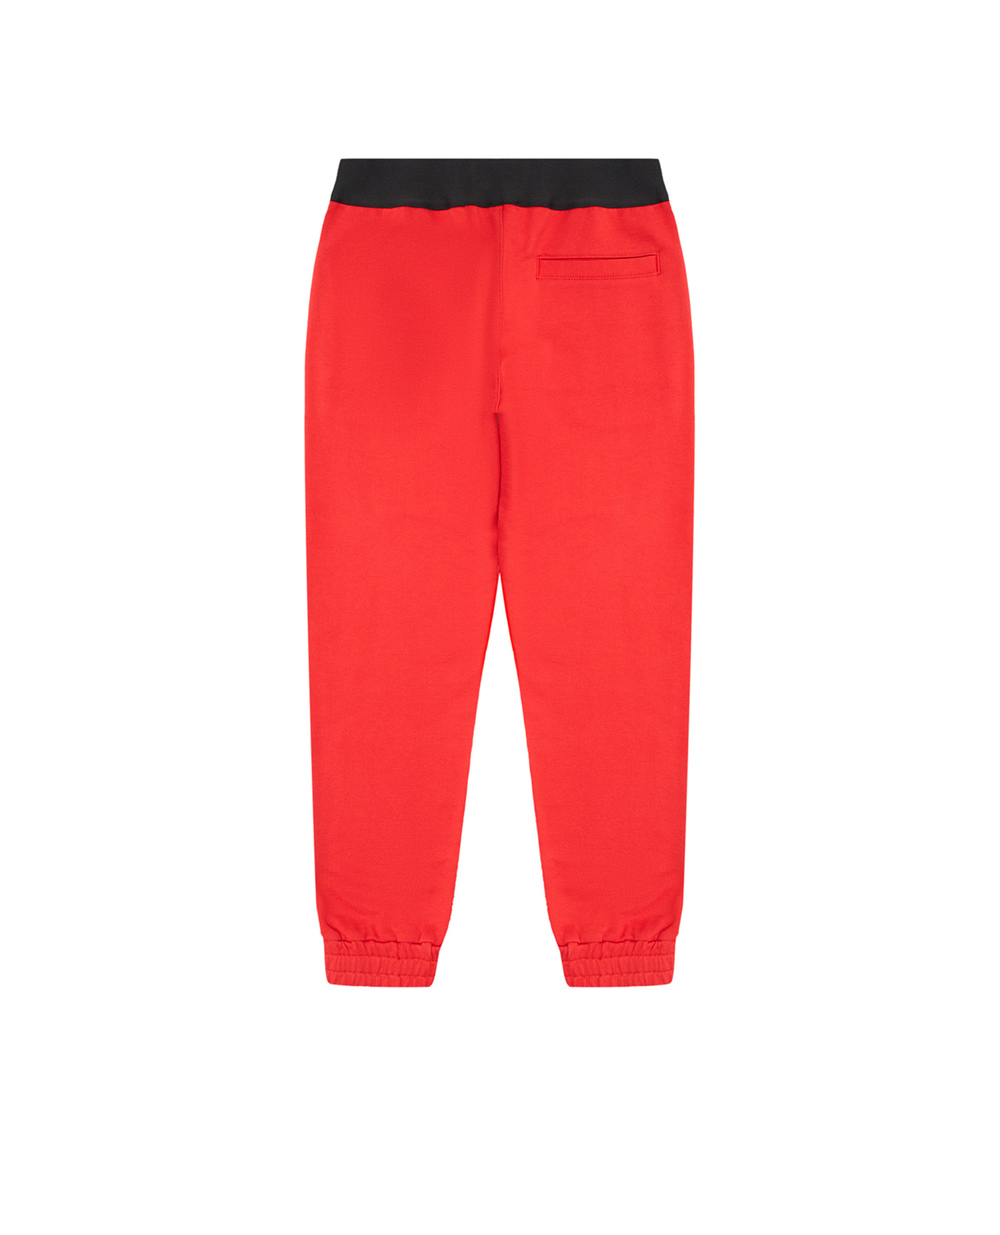 Детские спортивные брюки (костюм) Dolce&Gabbana Kids L5JP9G-G7E3Z-B, красный цвет • Купить в интернет-магазине Kameron